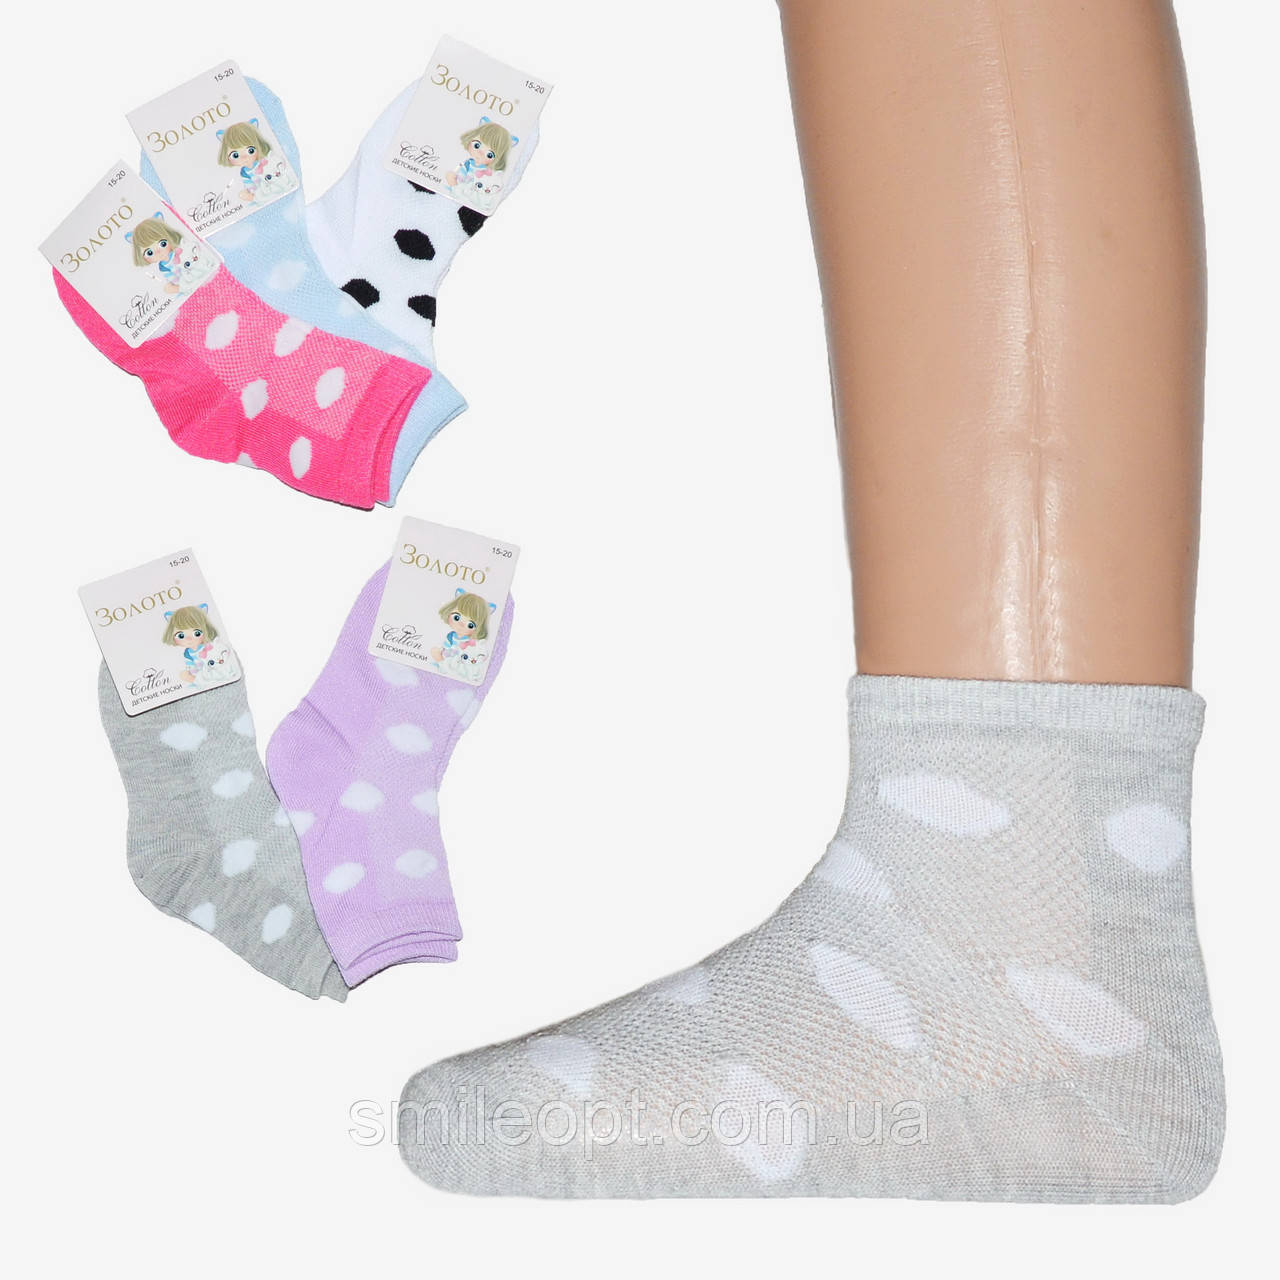 Шкарпетки дитячі сіточка в горошок (ND41/01)